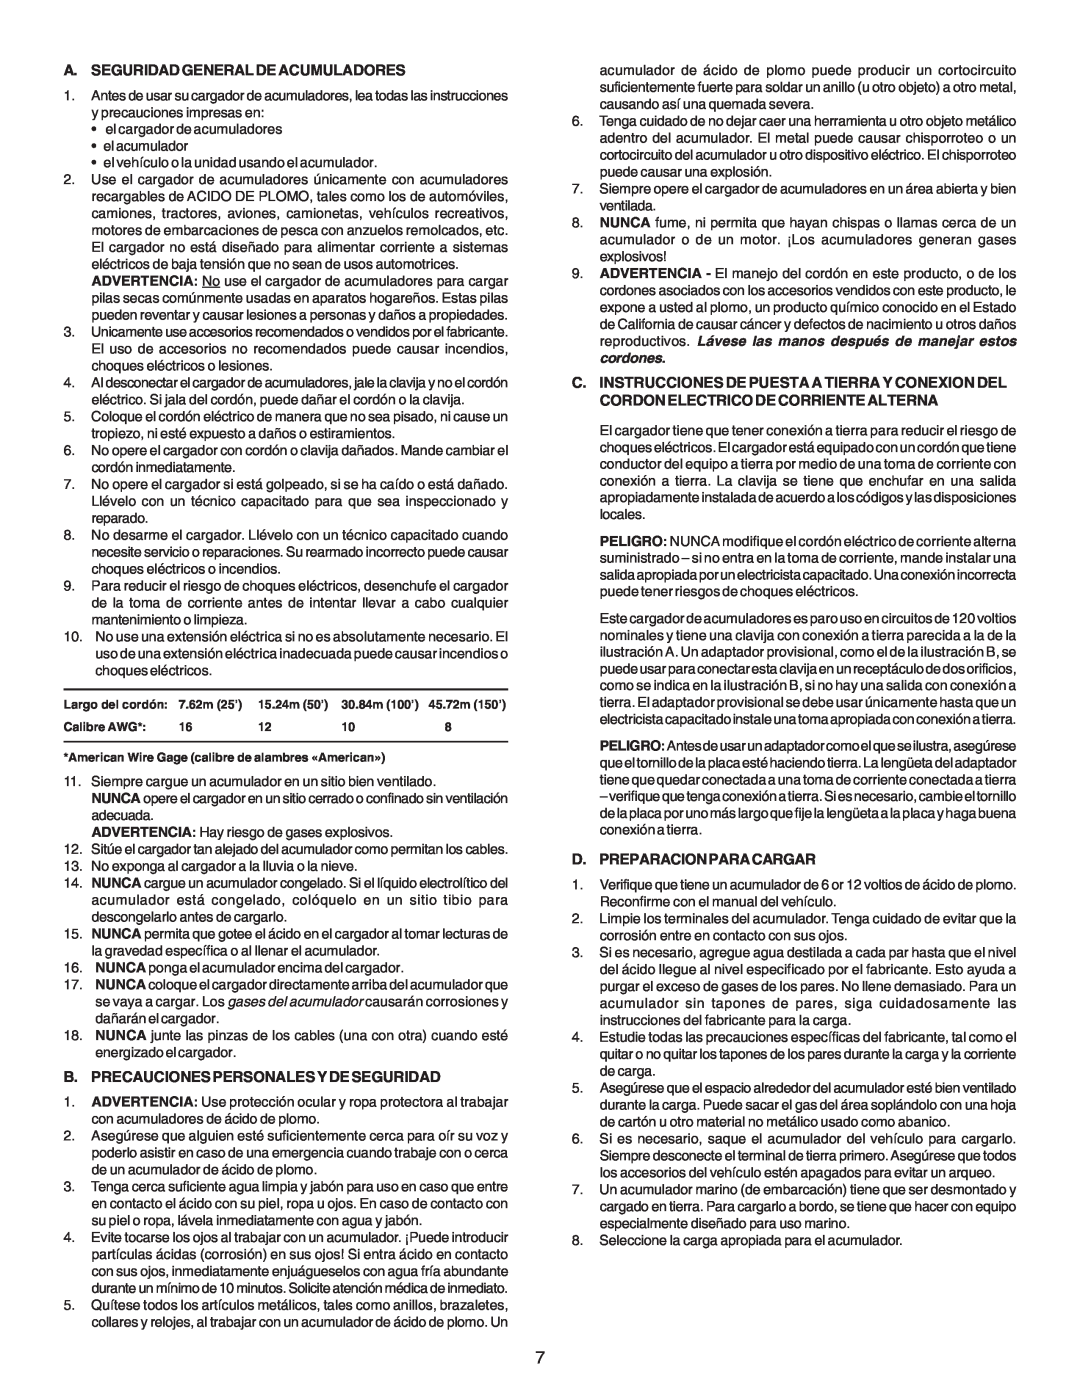 Schumacher SE-4220 owner manual A. Seguridad General De Acumuladores, B. Precauciones Personales Y De Seguridad 